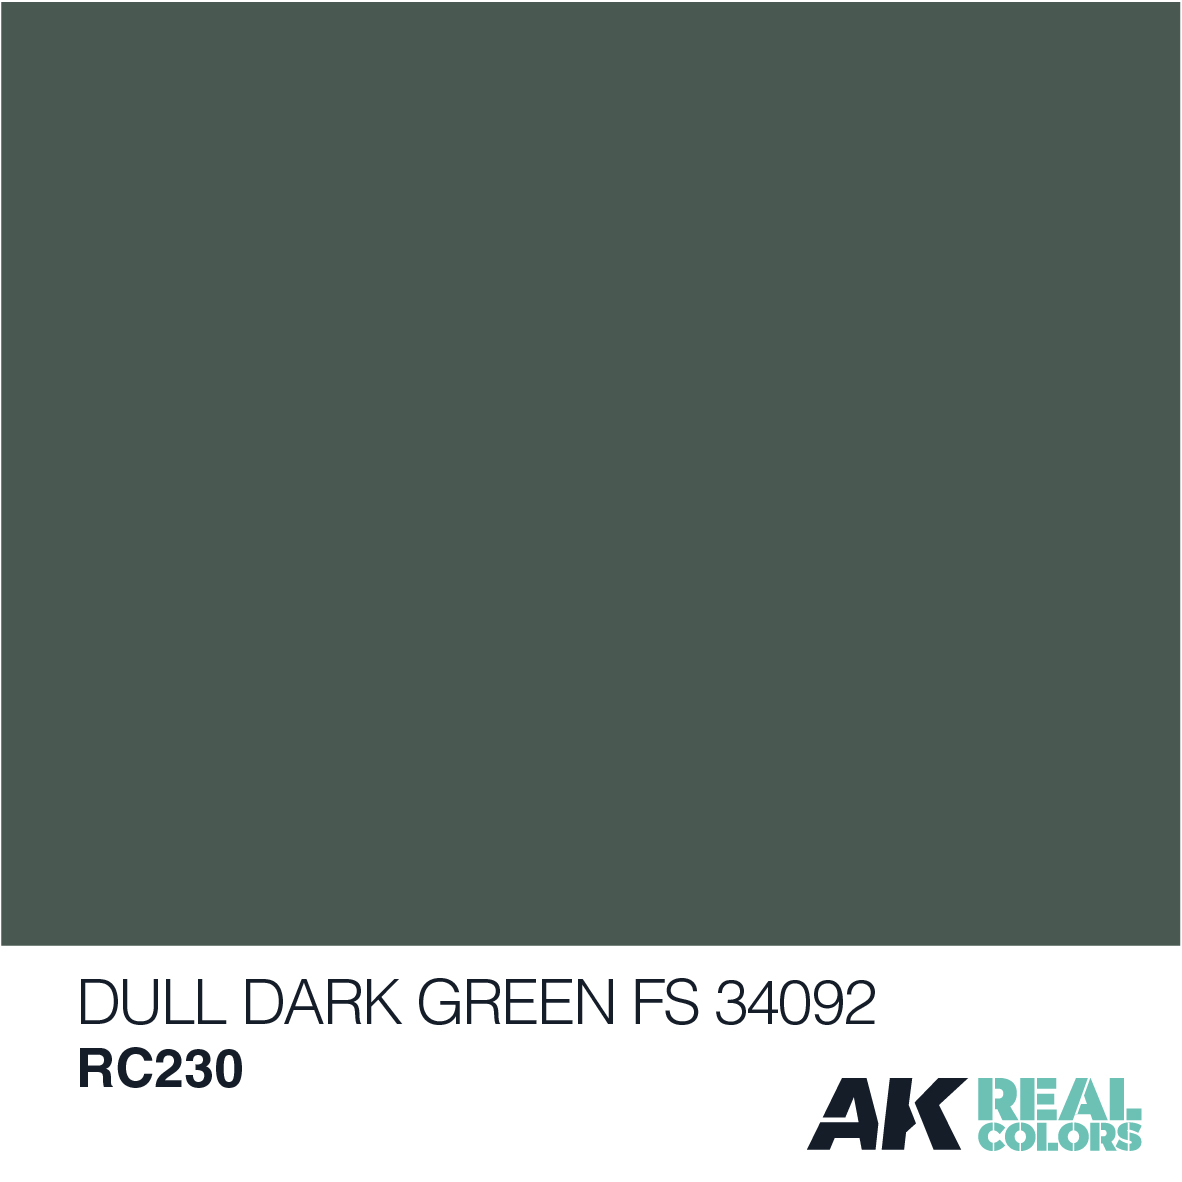 Dull Dark Green FS 34092